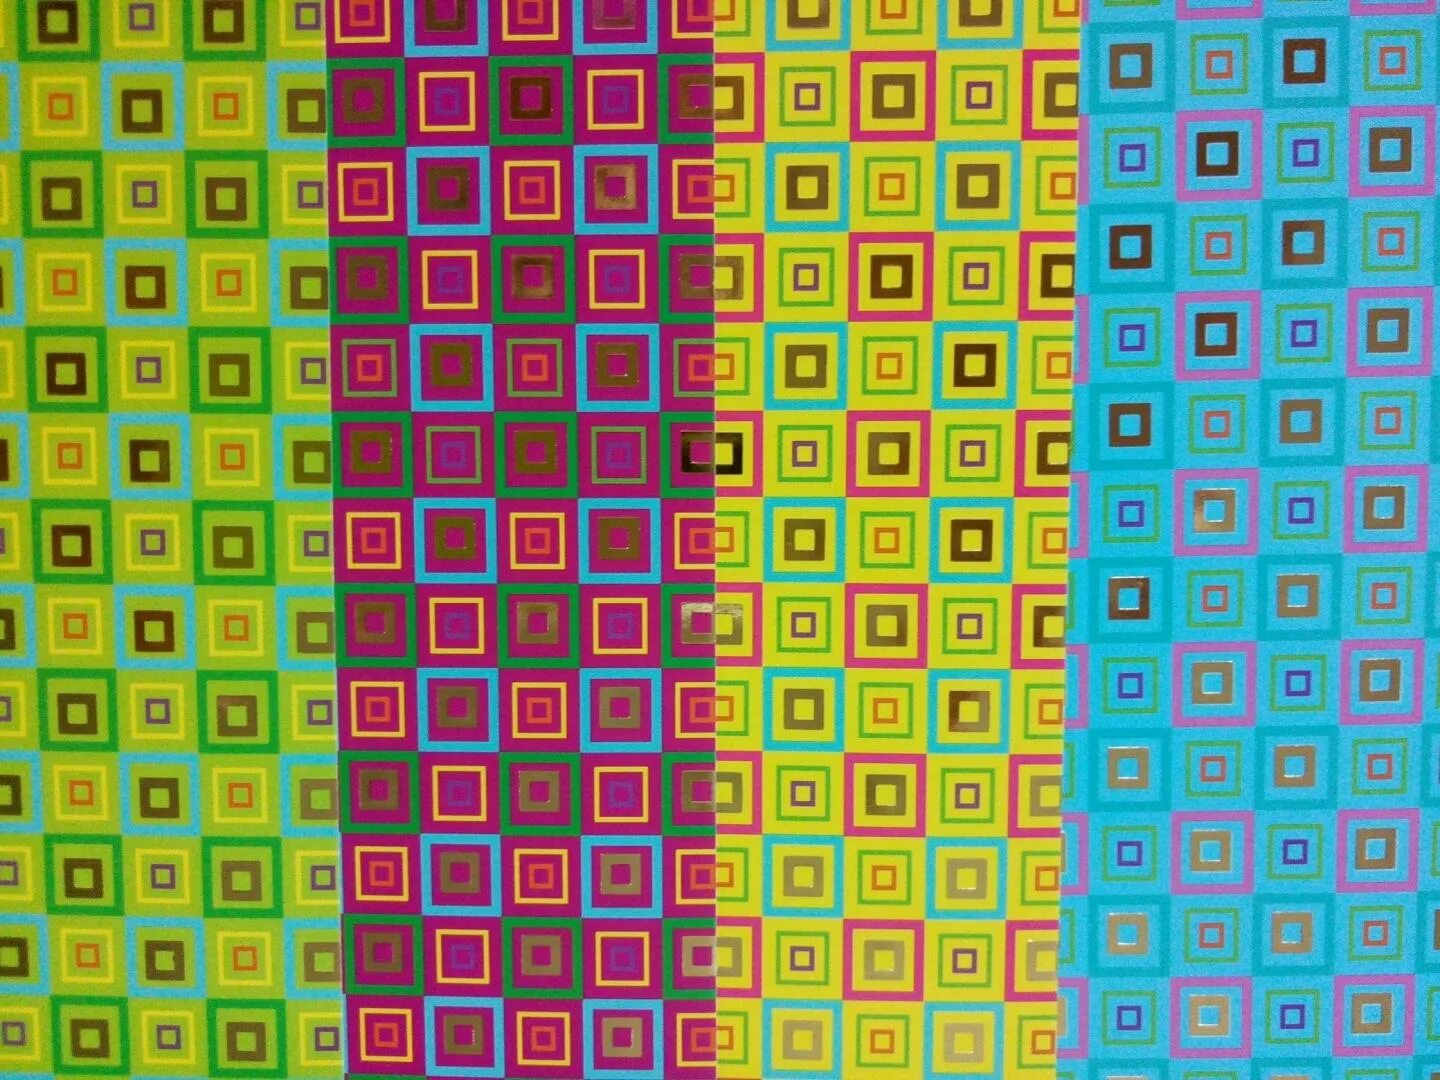 Маленький цветные квадратики. Разноцветные квадратики. Разноцветные квадратики маленькие. Картины из маленьких квадратиков. Цифры разноцветные квадрате.